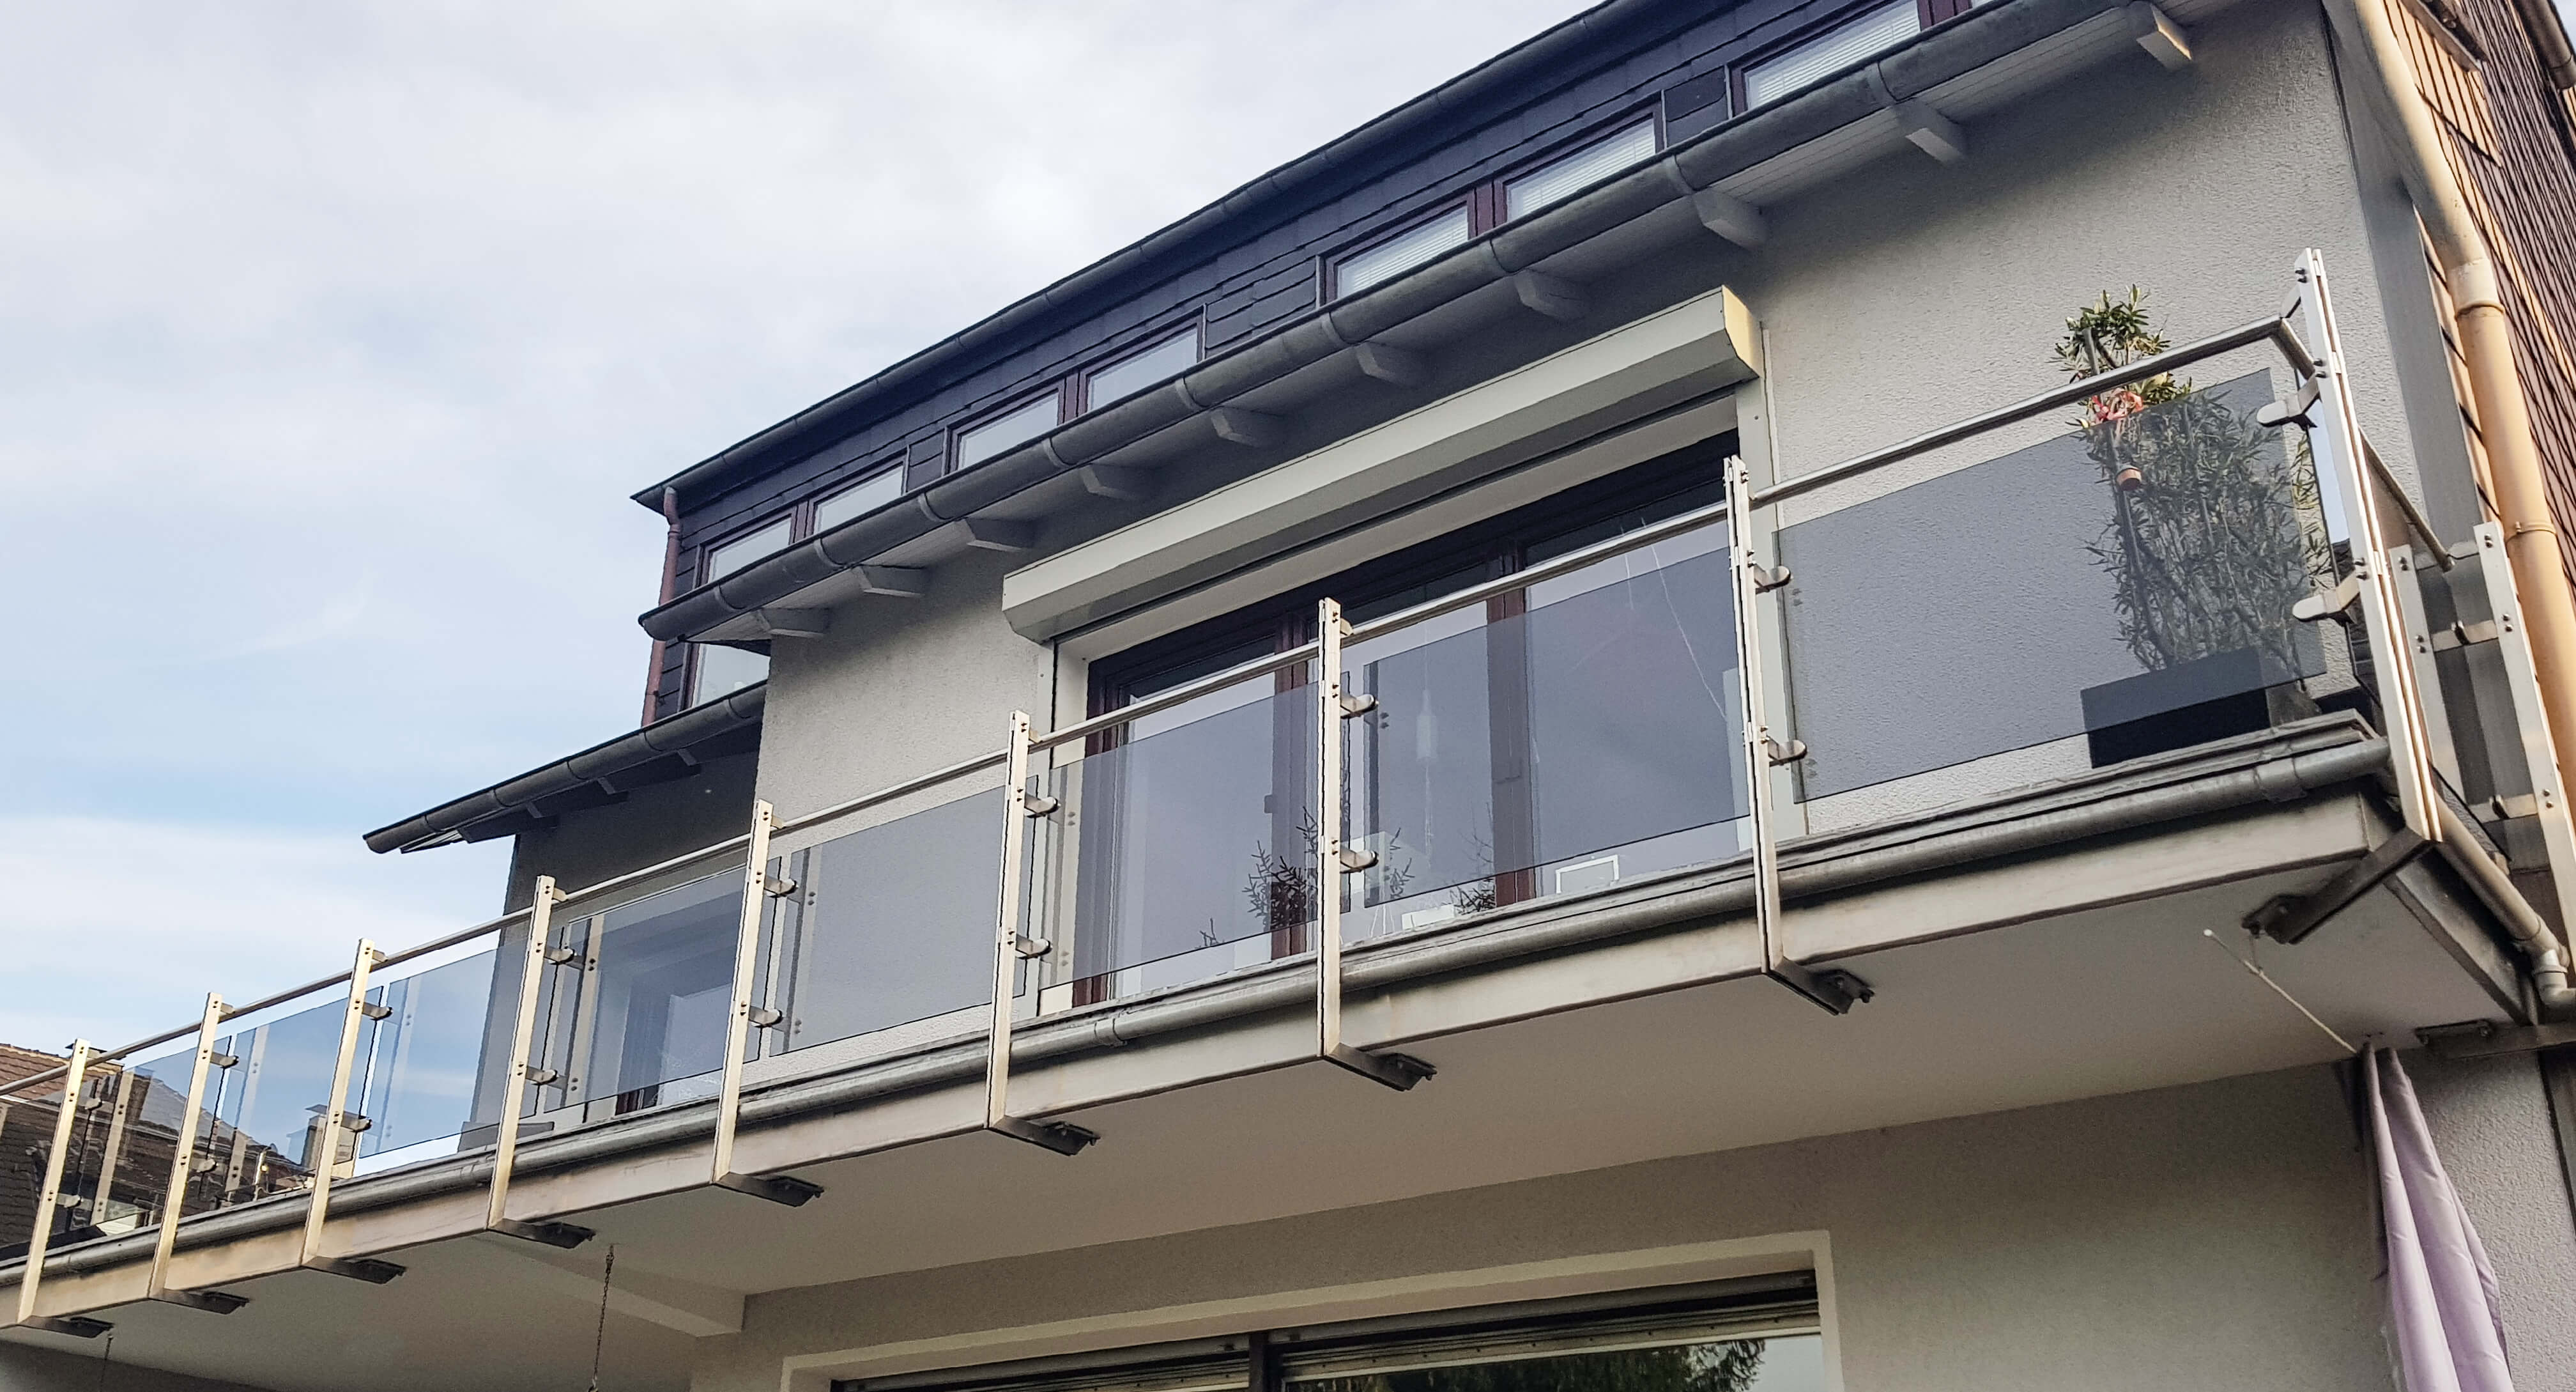 Acht Meter Balkongeländer aus Edelstahl verbaute die Edelstahlschlosserei Nappenfeld für ein 3-Familienhaus in Mülheim